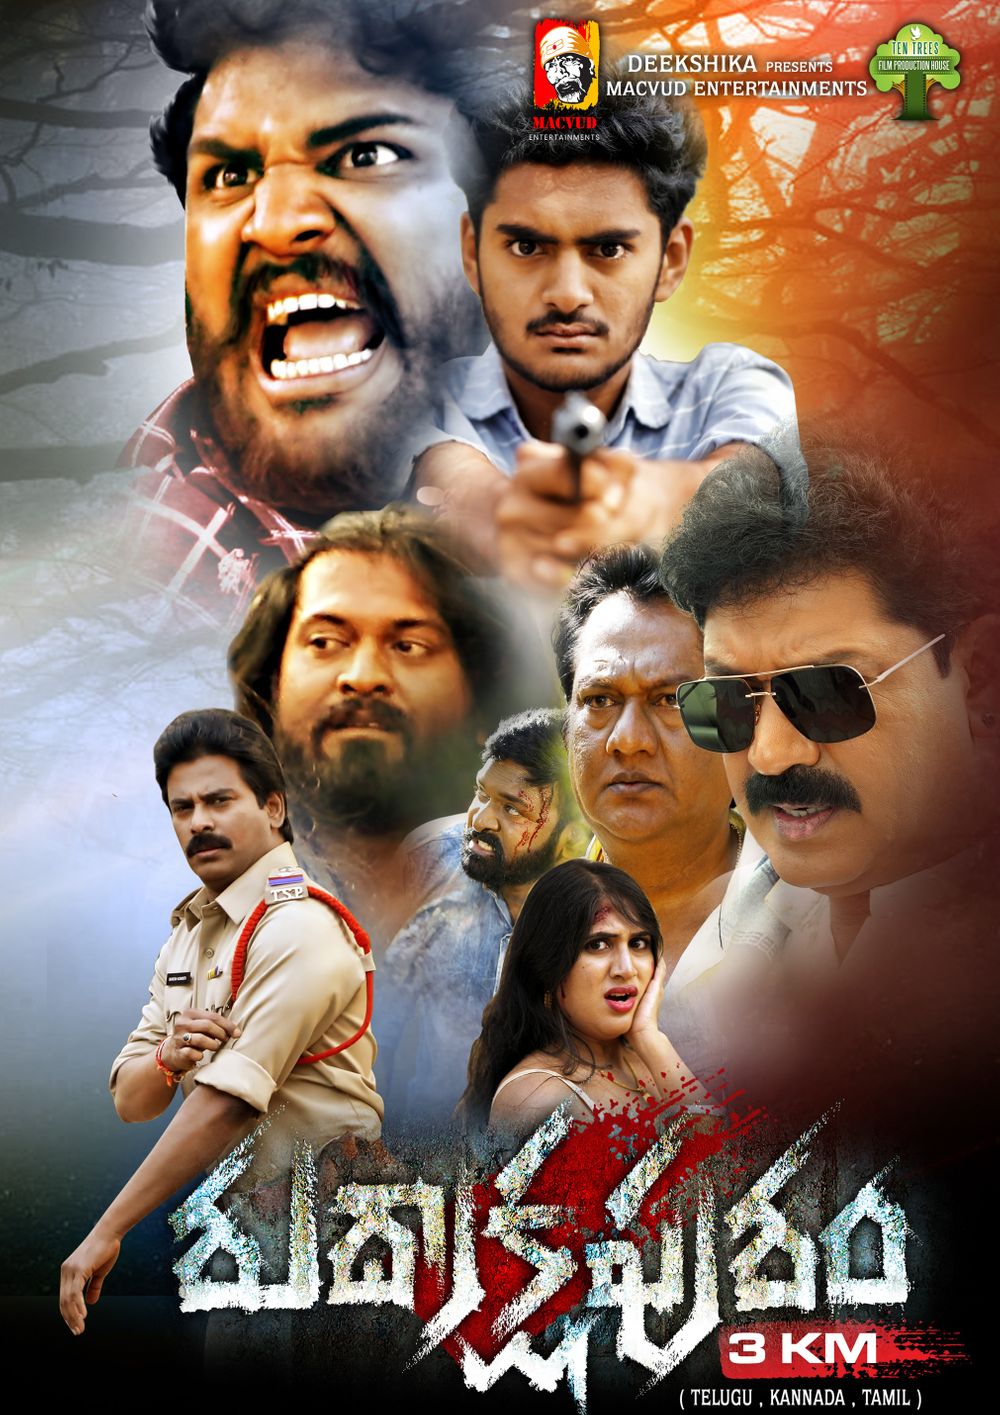 Rudrakshapuram 3 KM Movie Review